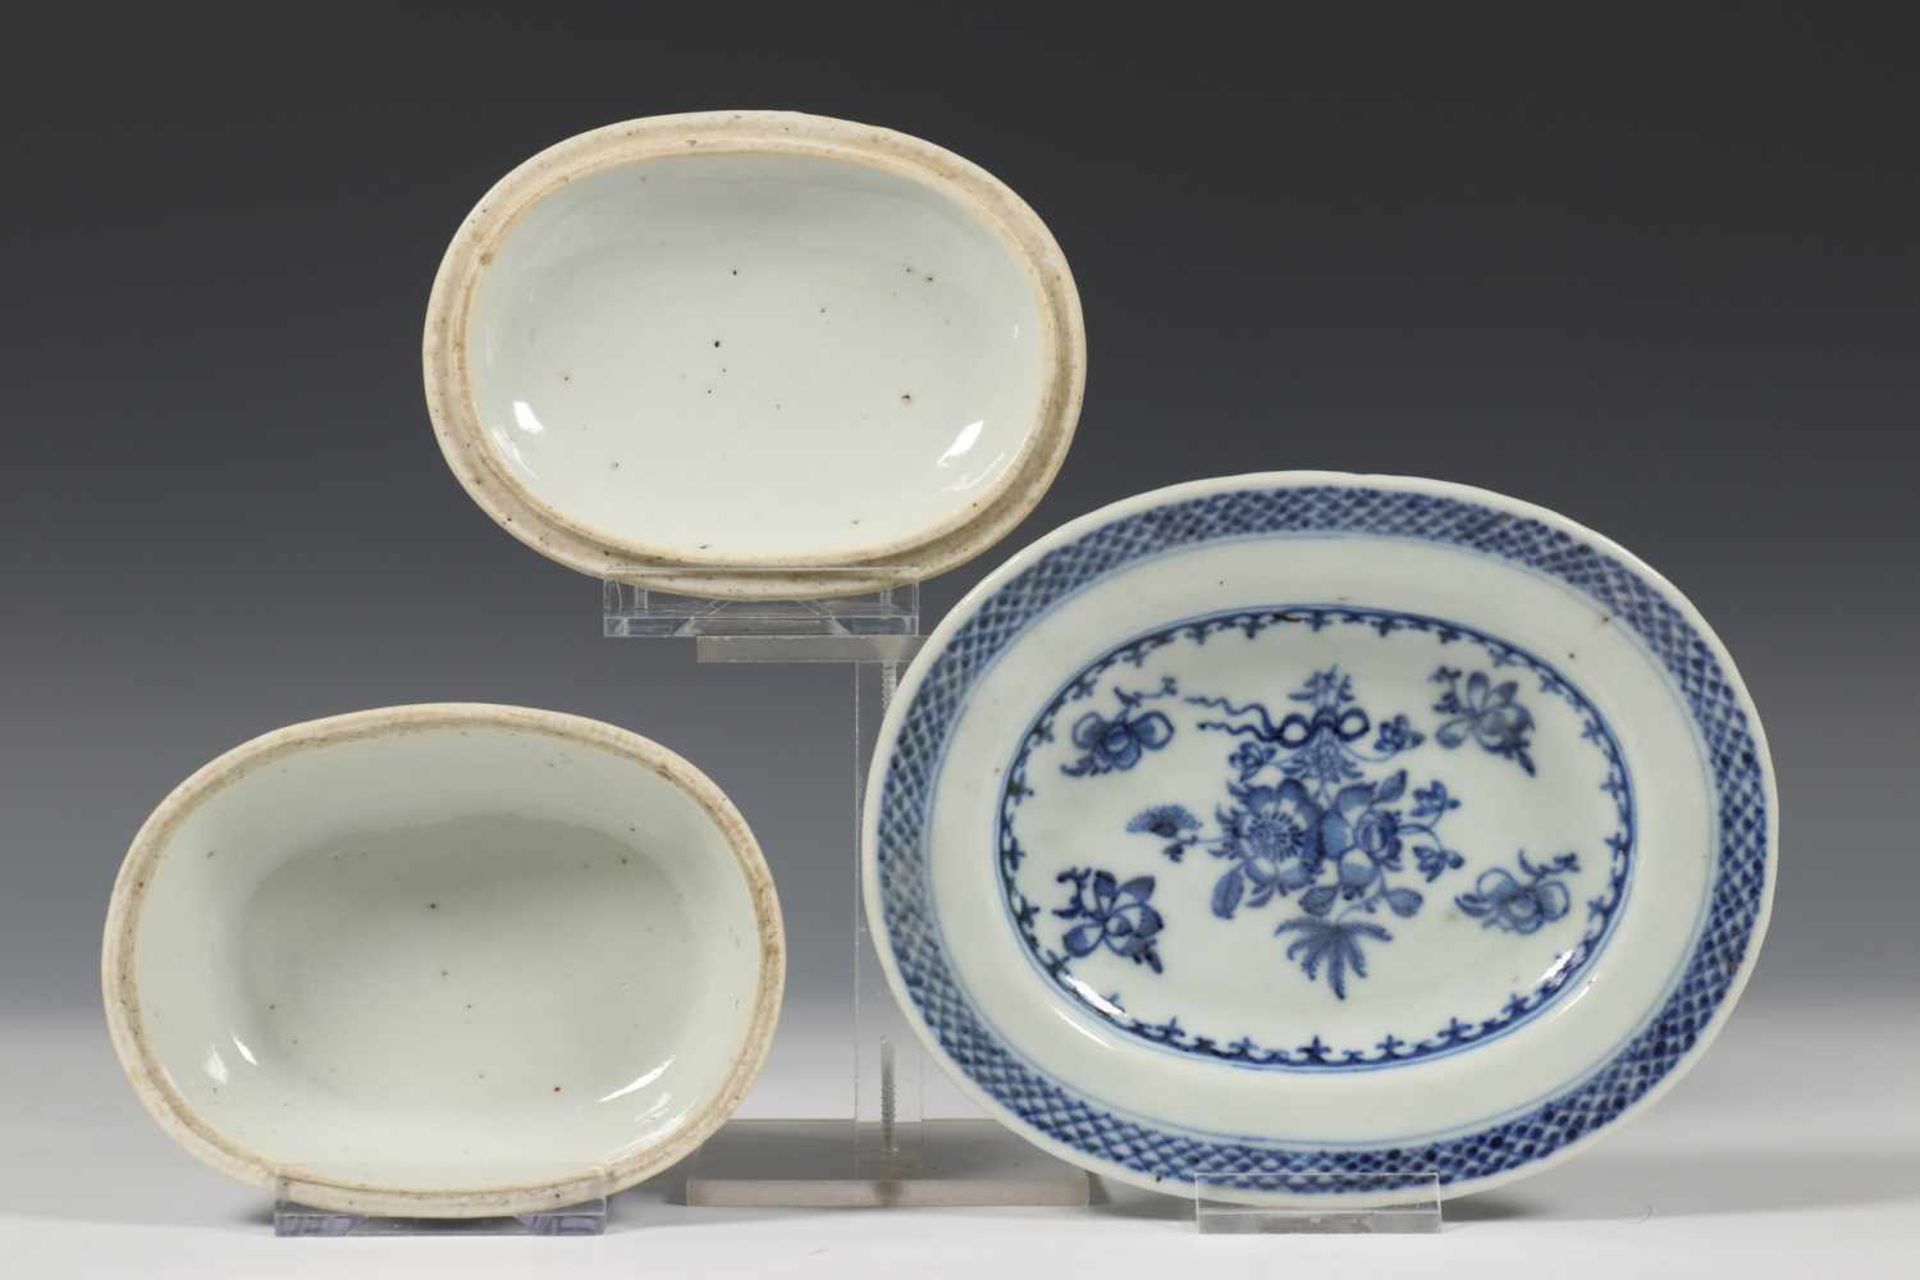 China, blauw-wit porseleinen botervloot, deksel en schotel, ca. 1800,gedecoreerd met bloemen , l. - Bild 2 aus 2